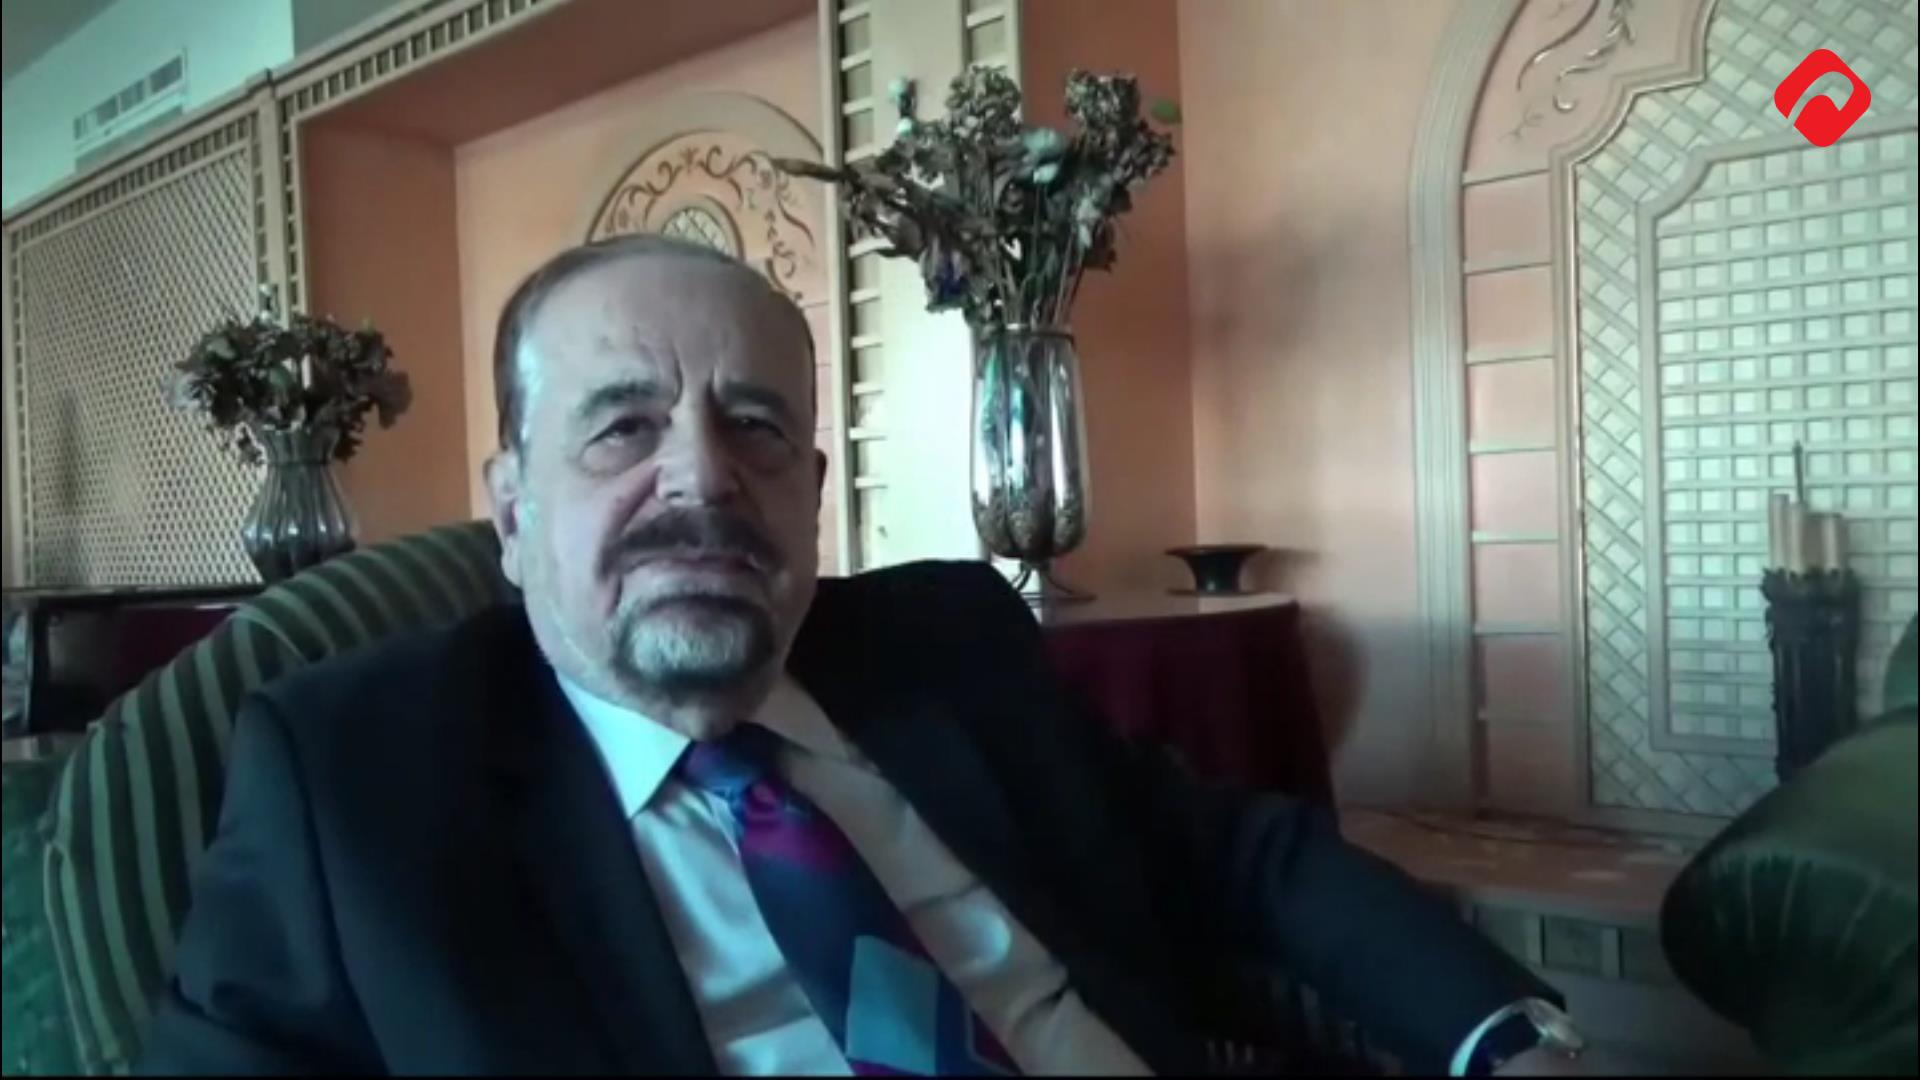 عشر سنوات من الذكريات في مصر مع السفير عيسى درويش، لماذا لم يكرر اللقاء مع جيهان السادات؟ (الجزء الأول- فيديو)